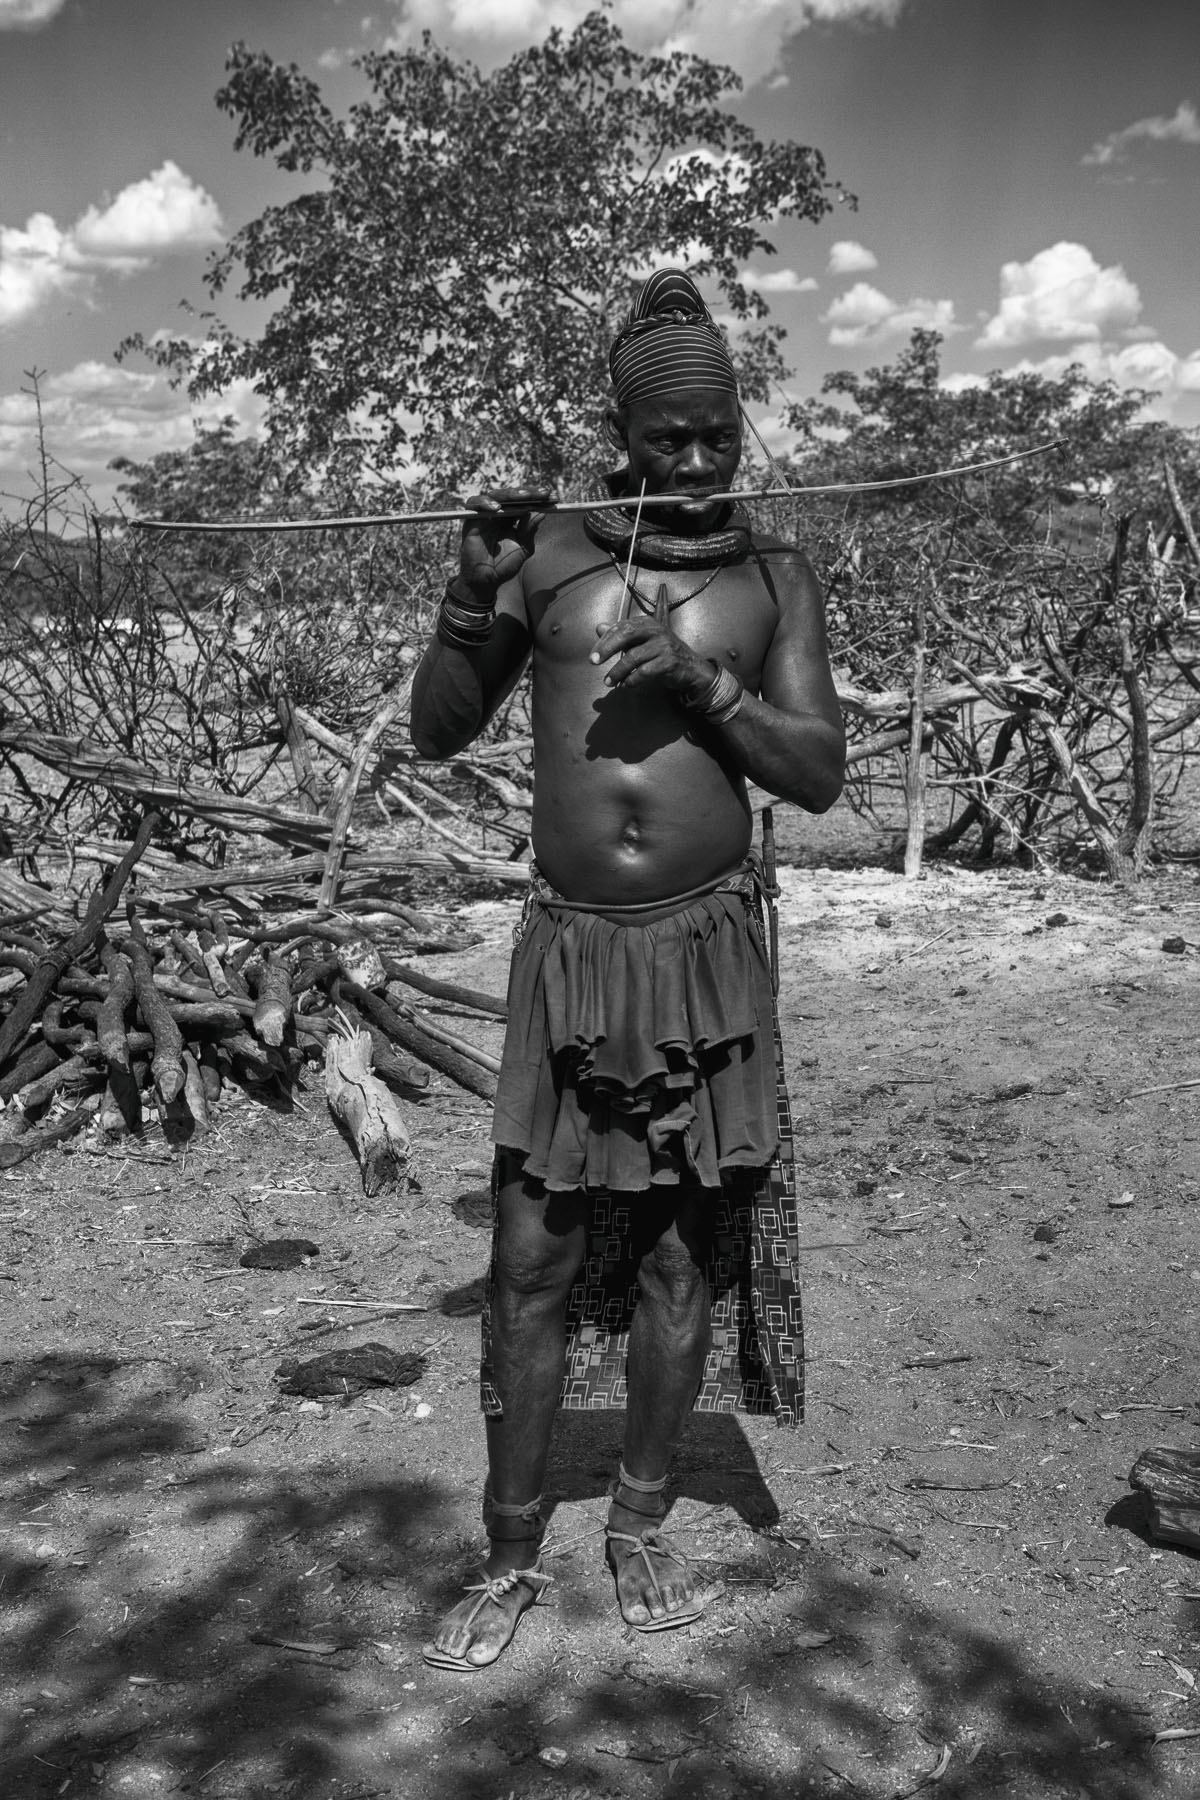  Himba land